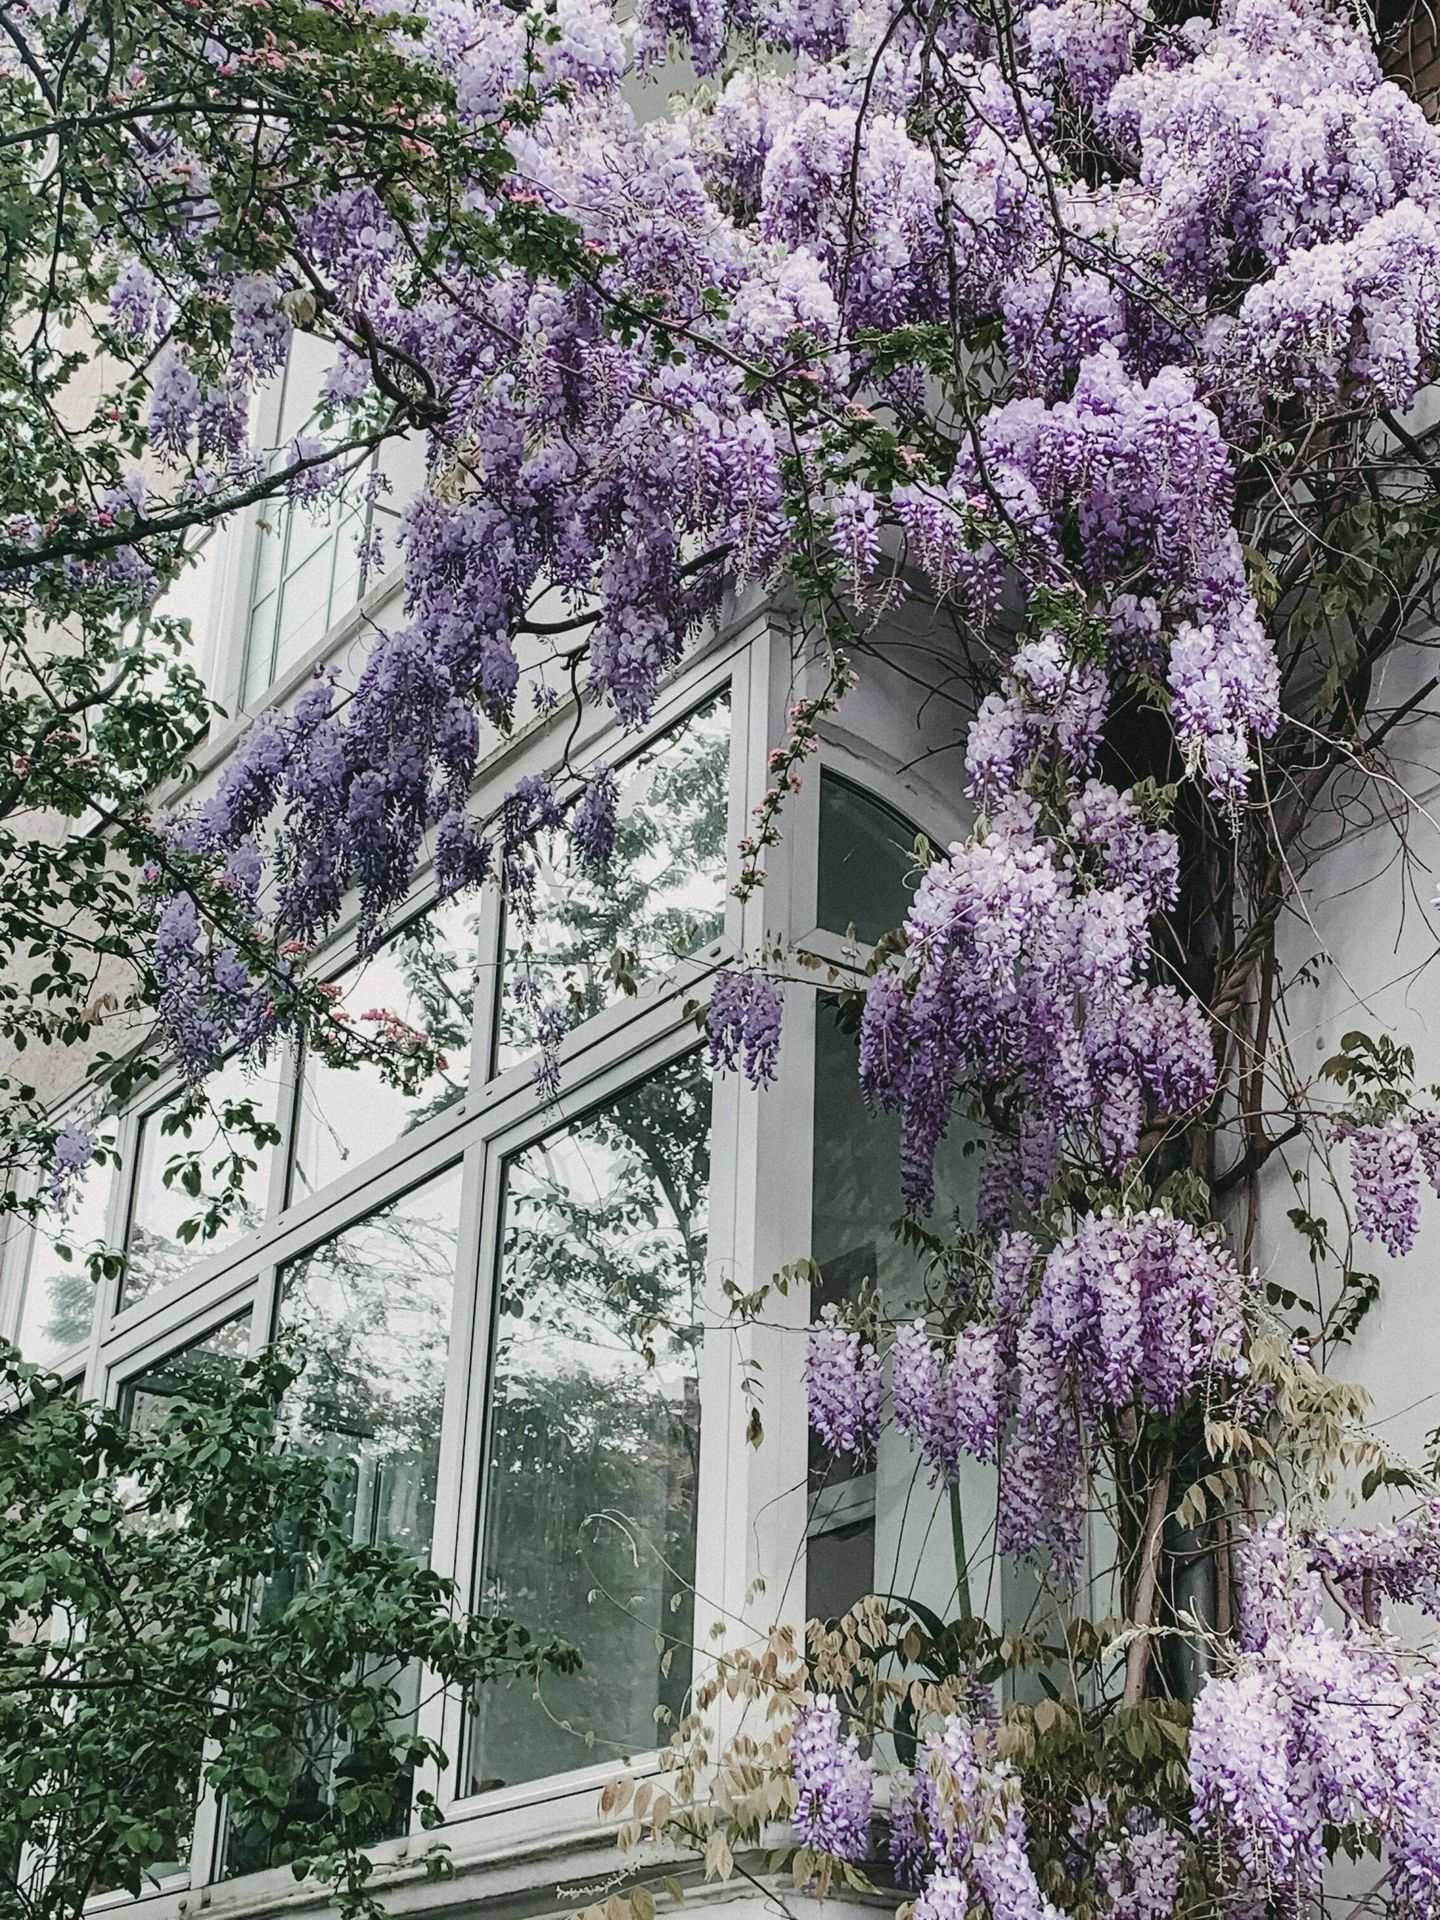 El olor de las lilas es muy representativo de la primavera. (Unsplash/Alyssa Strohmann)